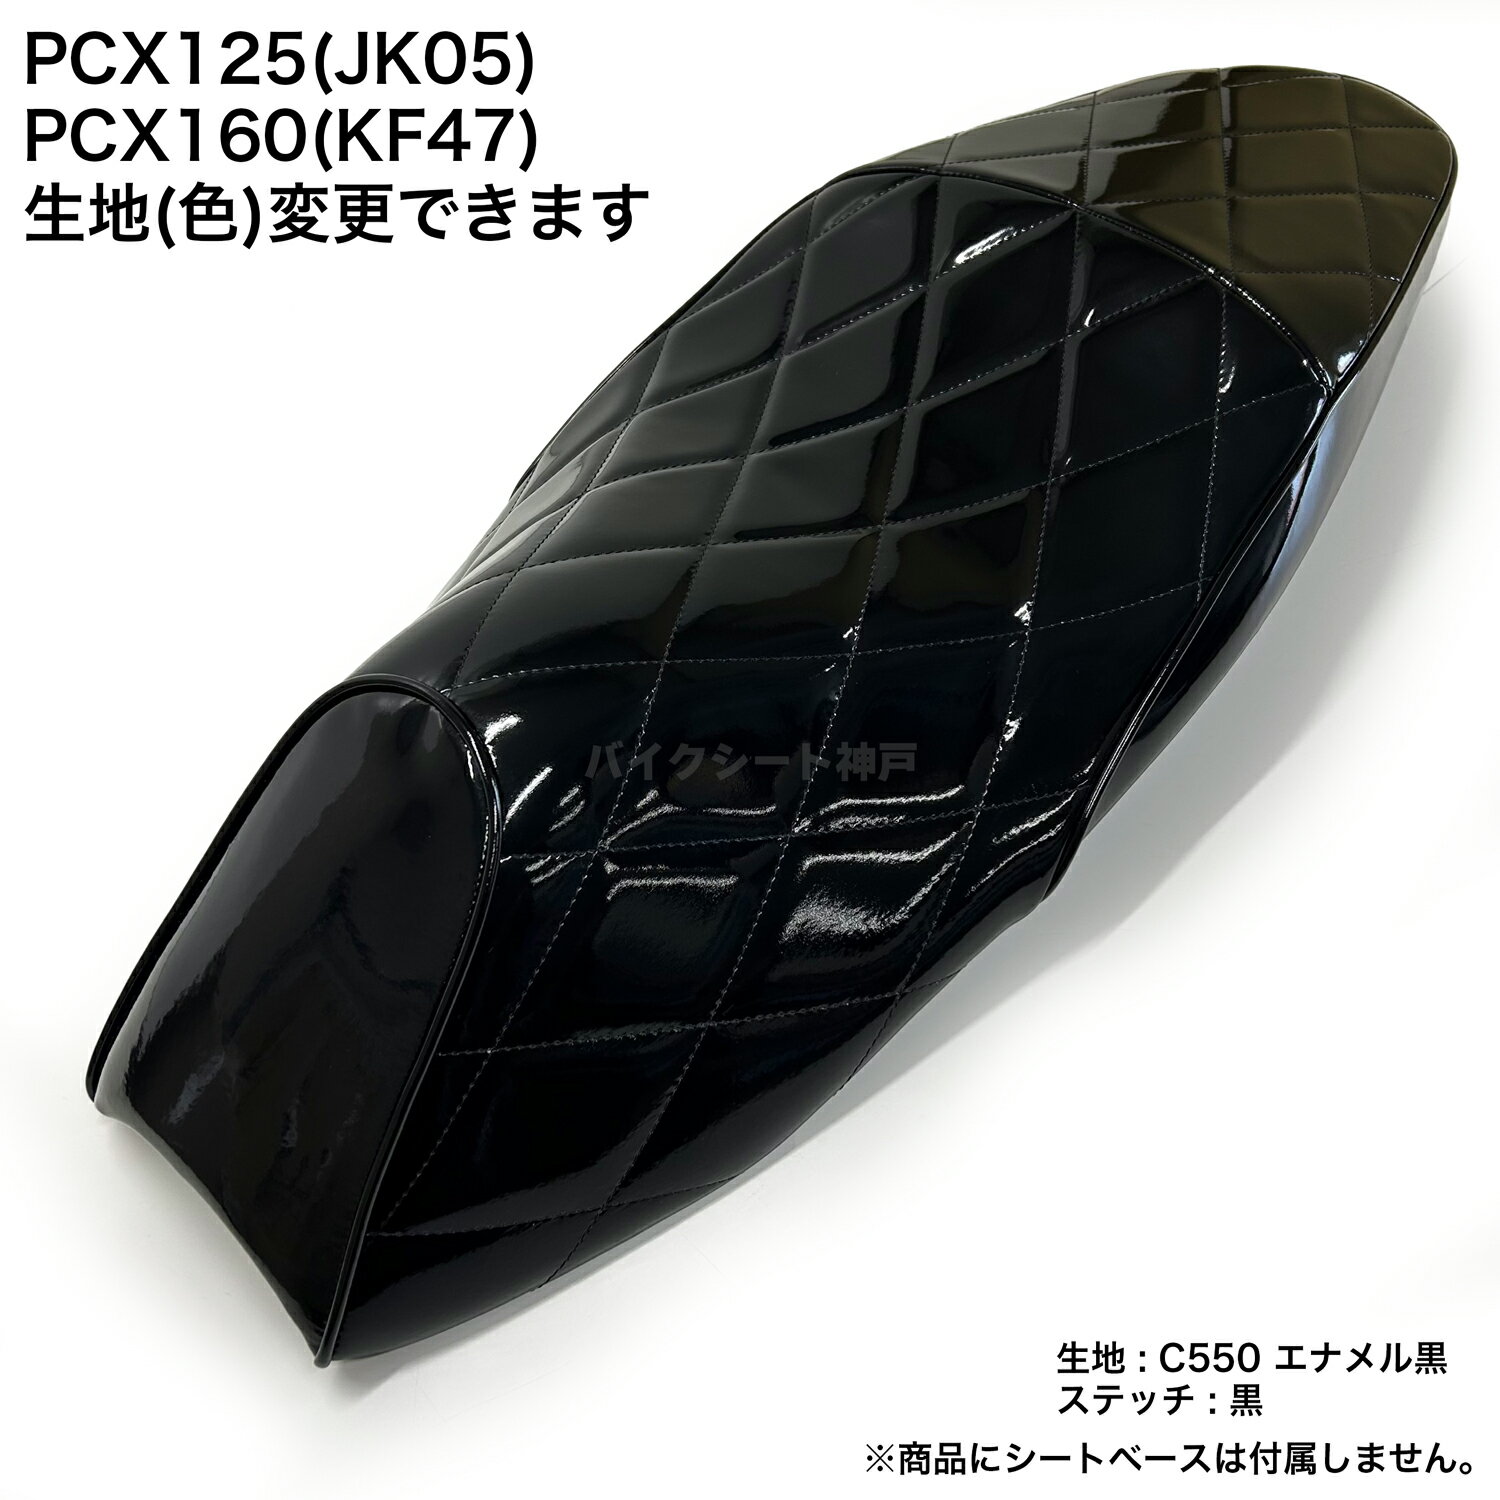 【全て日本製】【項目選択肢あり色変更可能】PCX 125 (JK05) PCX160 (KF47)シート カバー エナメル黒 ダイヤカット ミシンぬい HCH5714 1